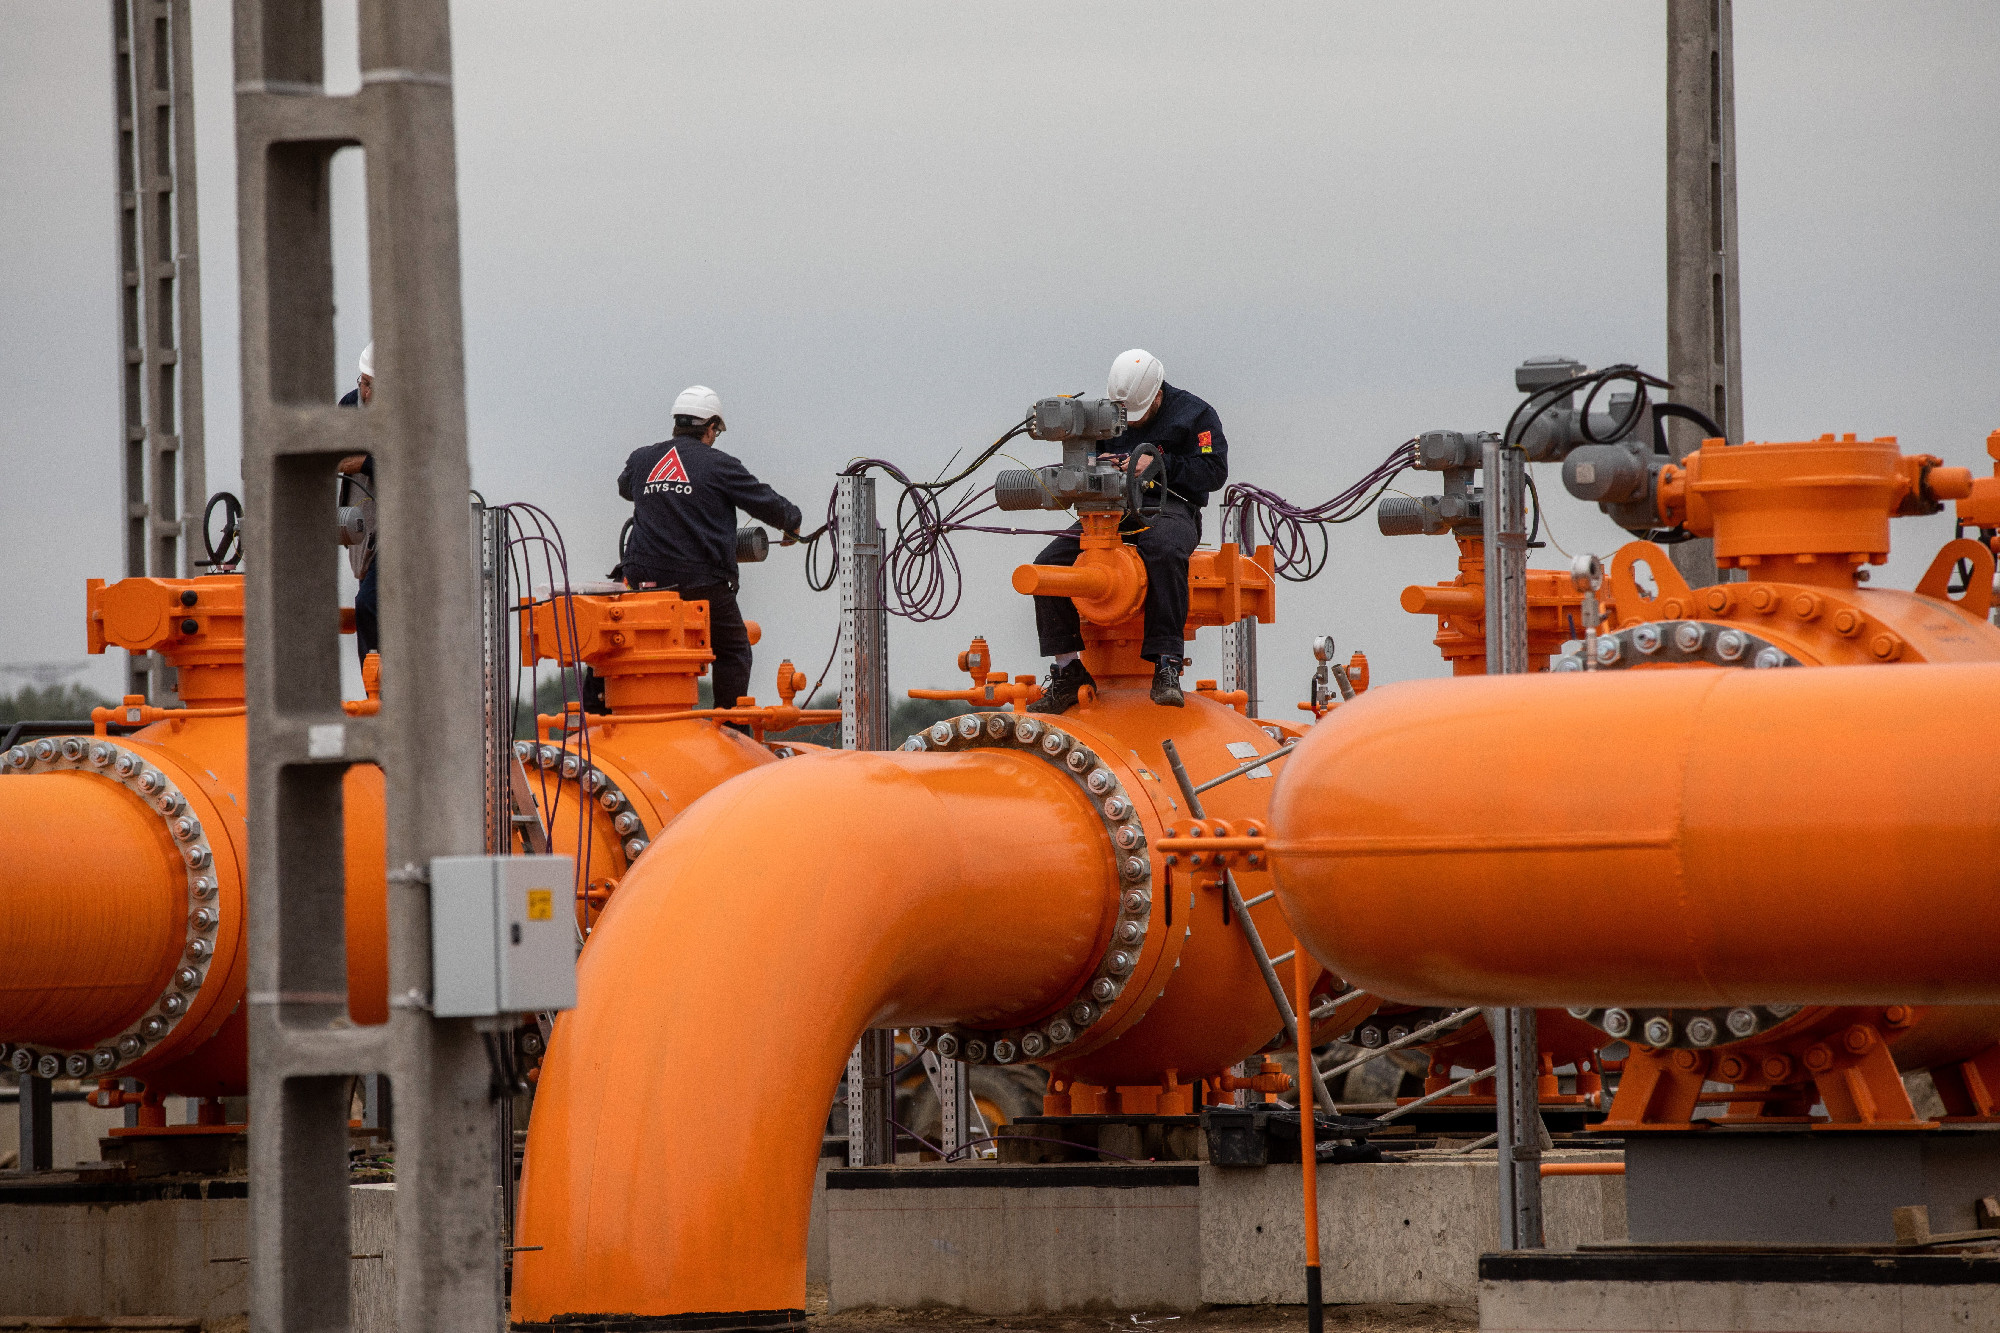 Az európai gáztárolókban most nagyobb a töltöttség, mint Magyarországon